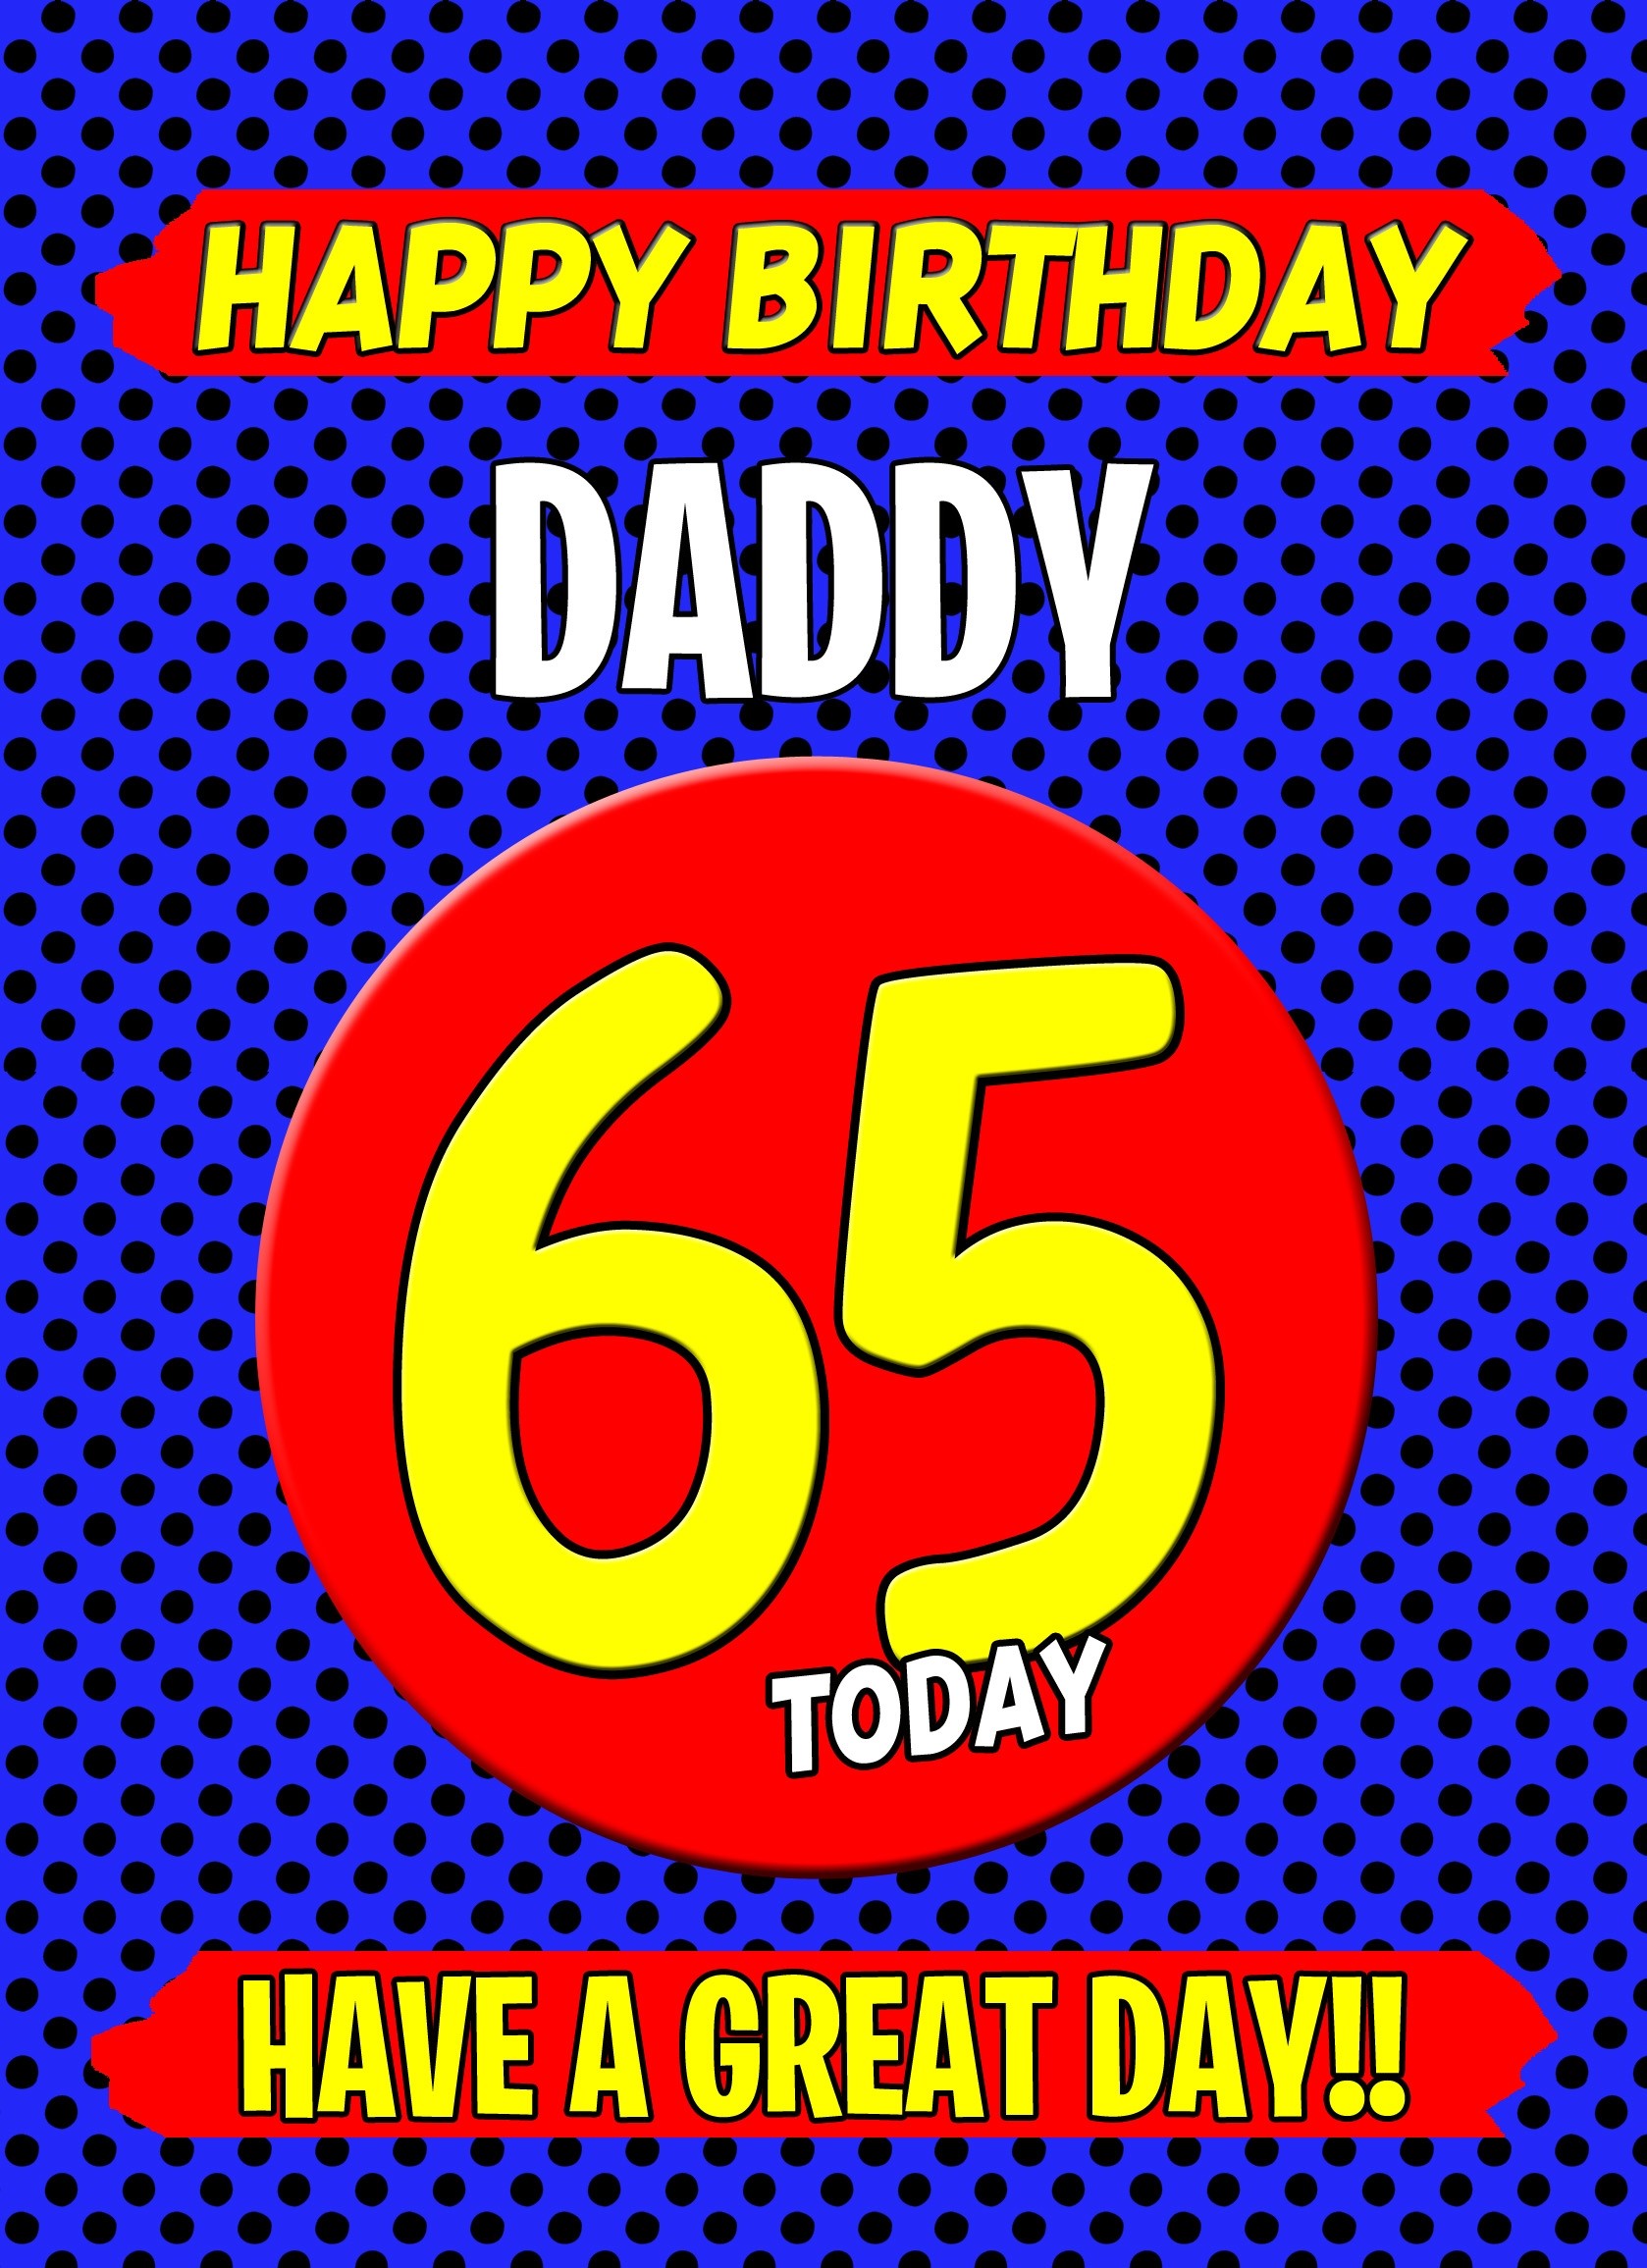 Daddy 65th Birthday Card (Blue)